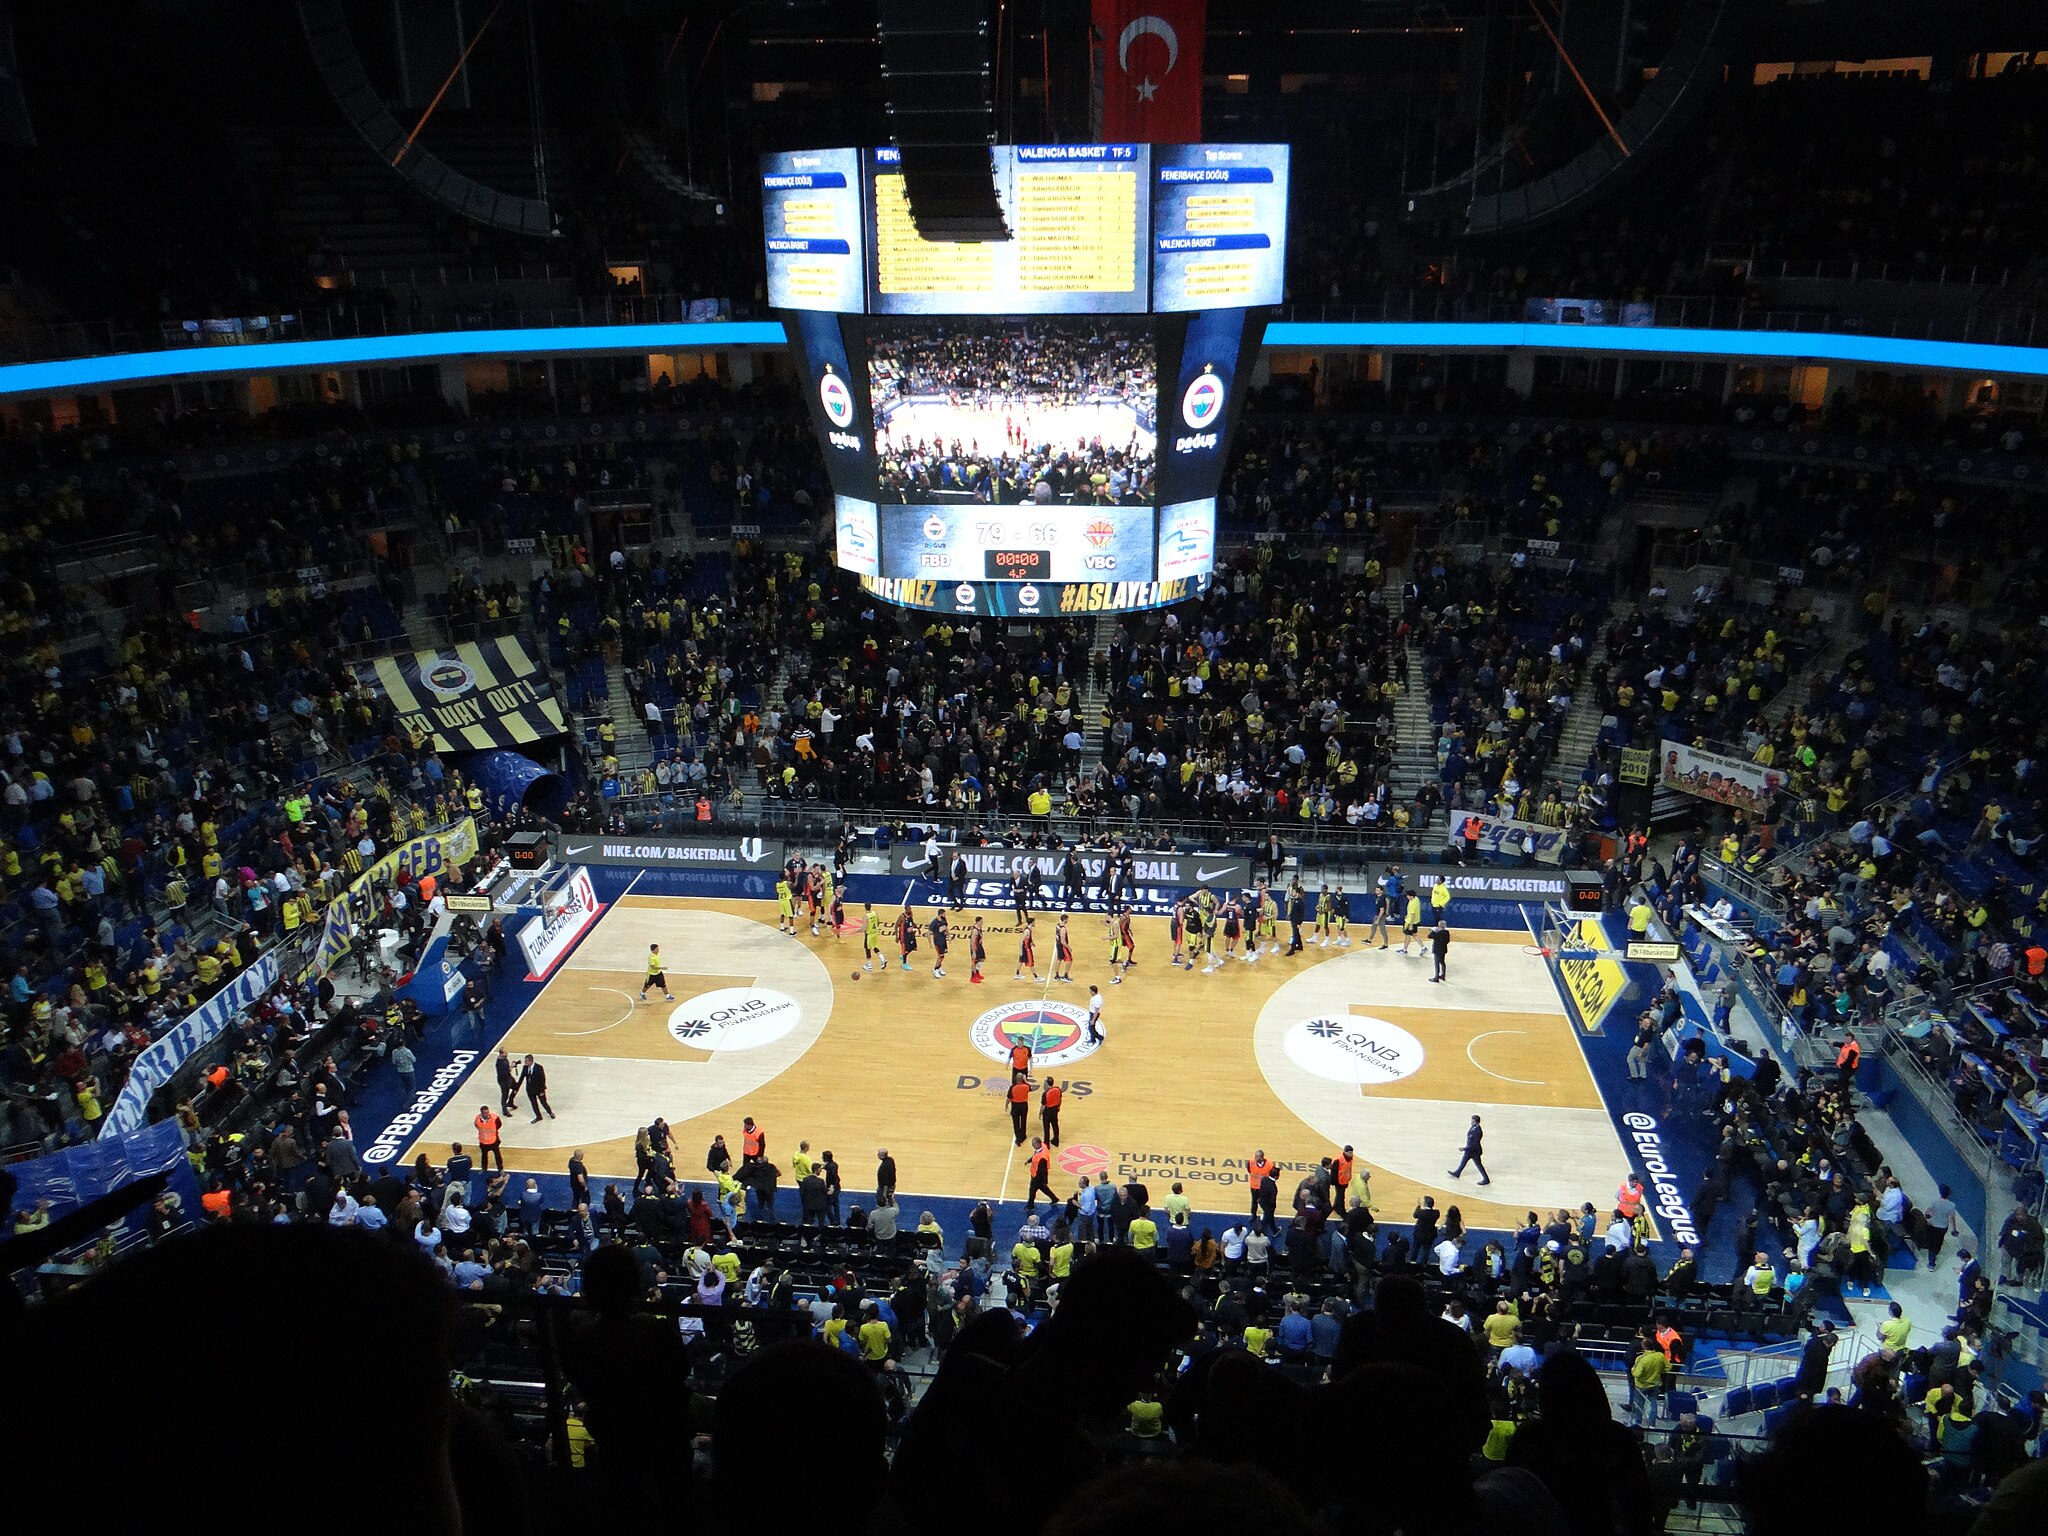 Registro fotográfico del estadio durante un partido de la Euroliga de Basquet, entre Fenerbahçe y Valencia Basket, 2017. Foto: Sakhalinio/CC BY-SA 4.0, via Wikimedia Commons.